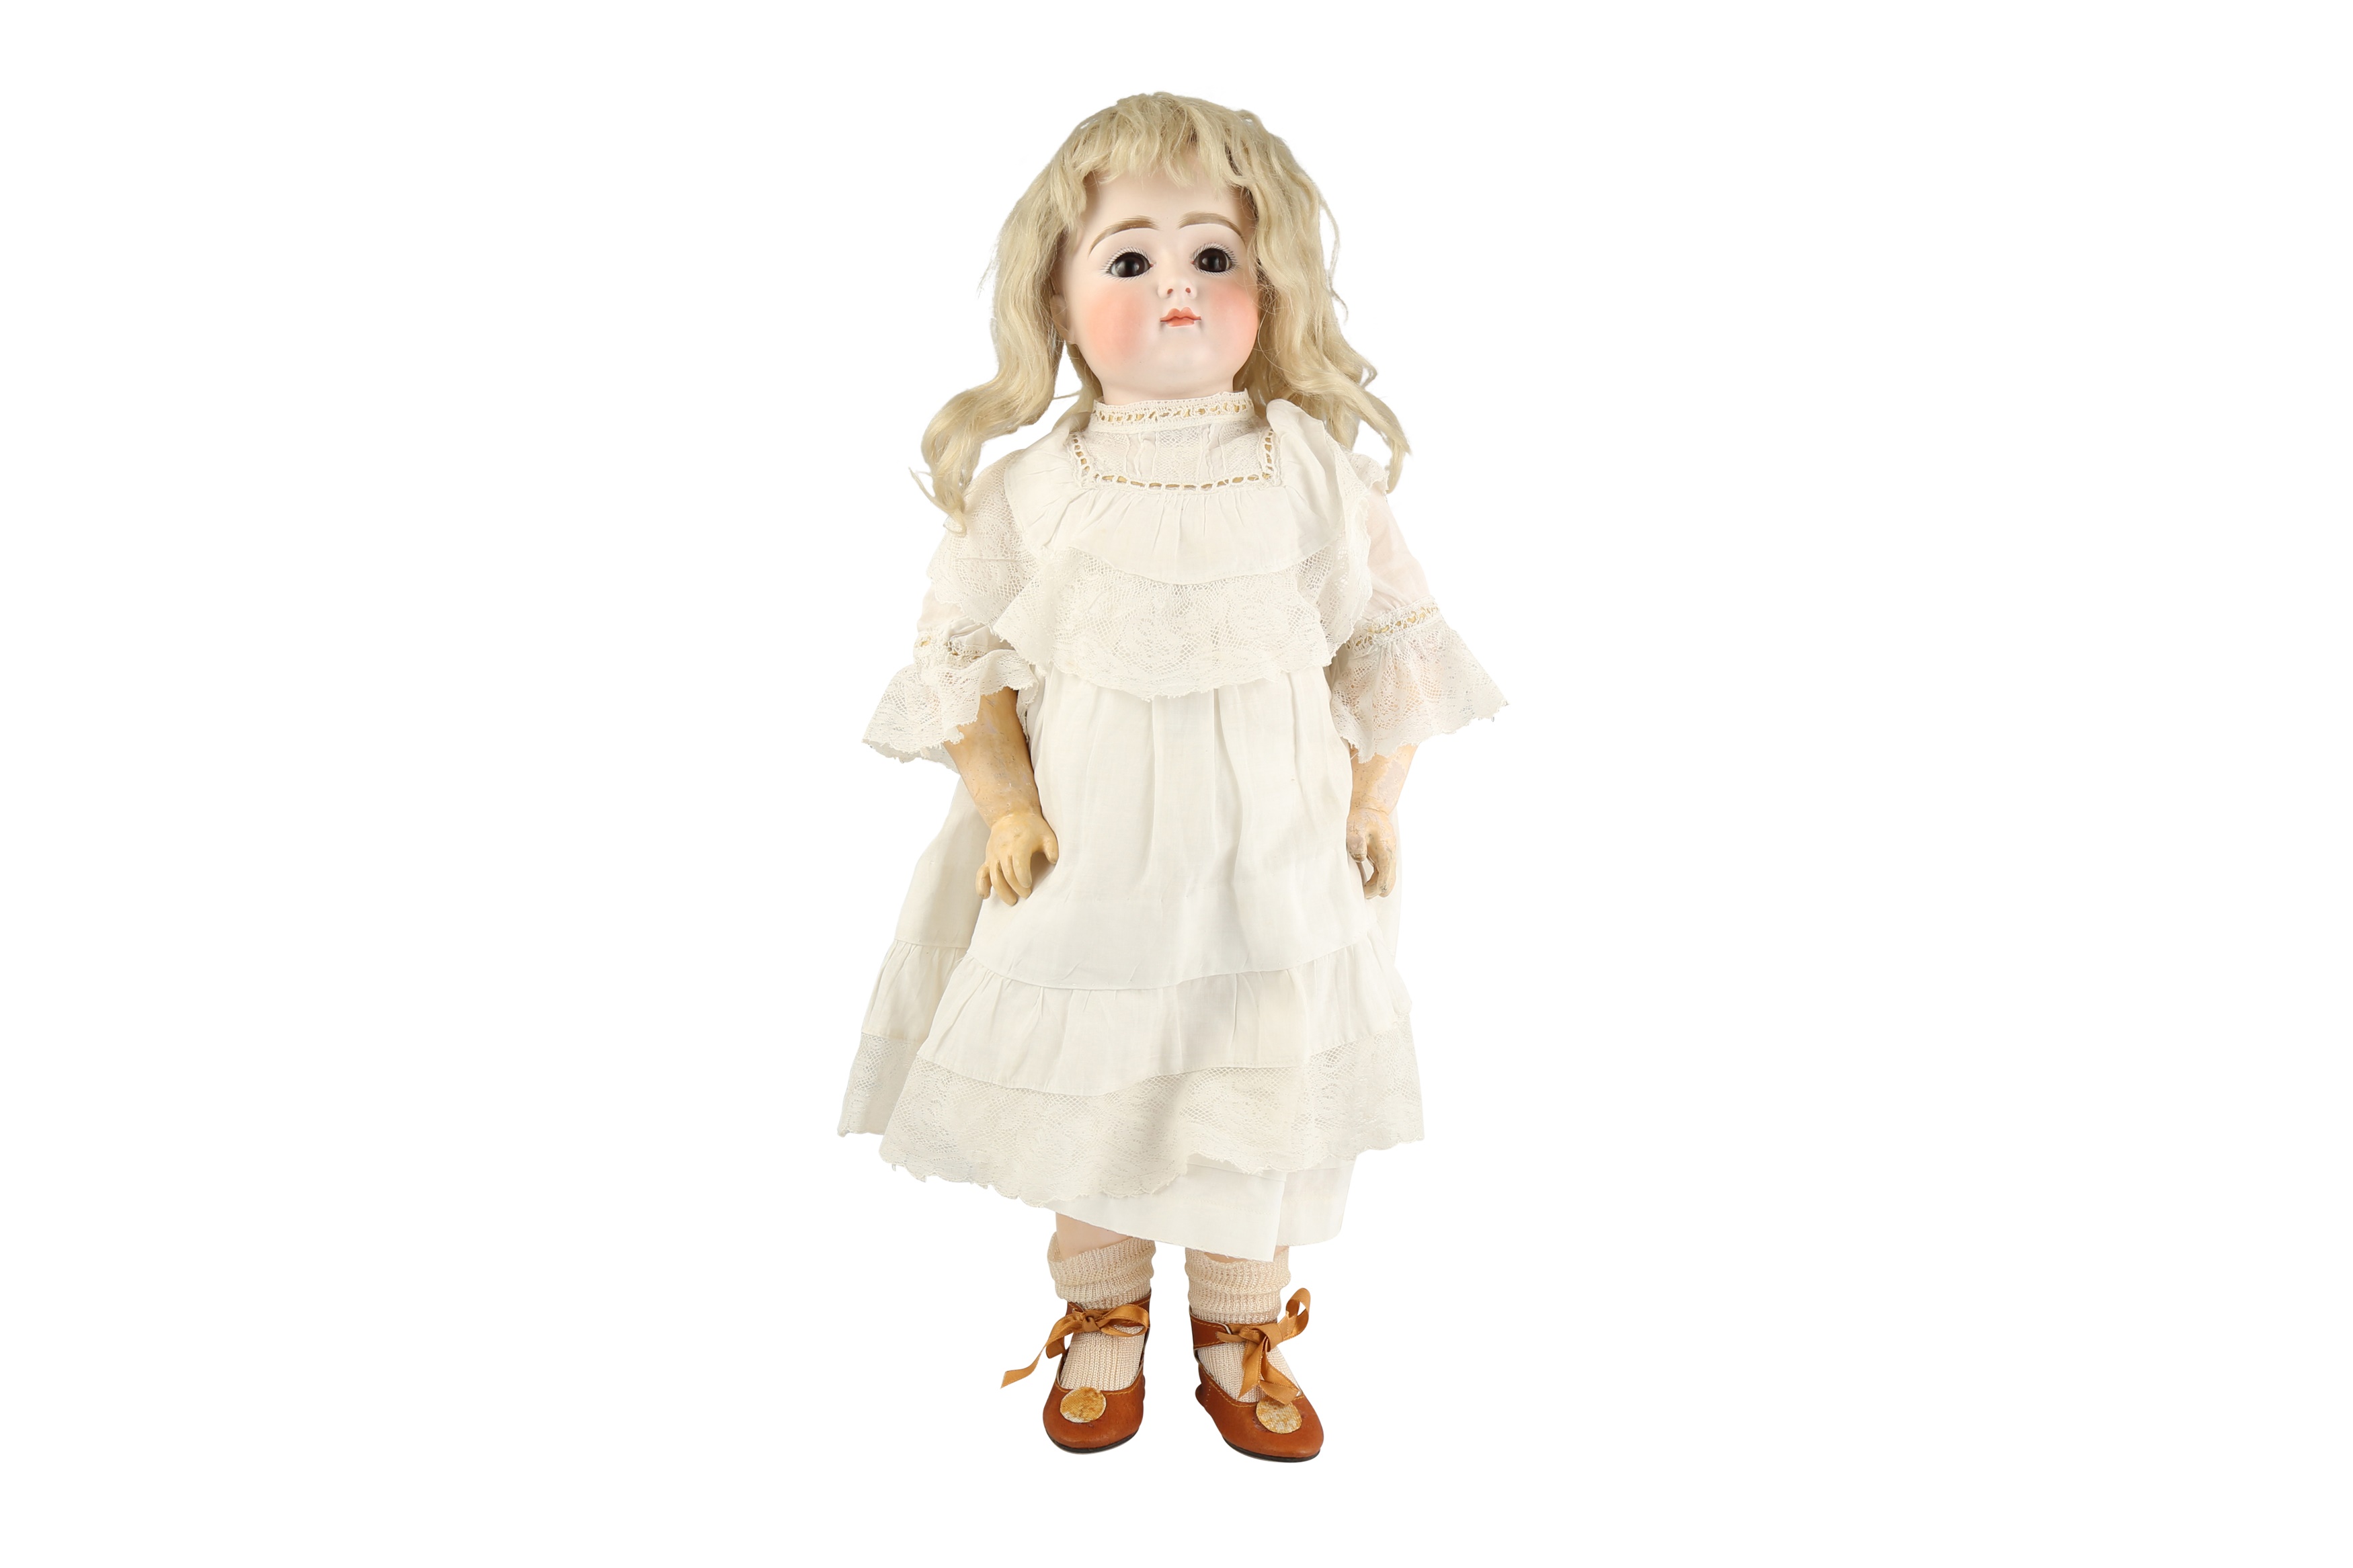 Kestner Dolls for Sale at Online Auction